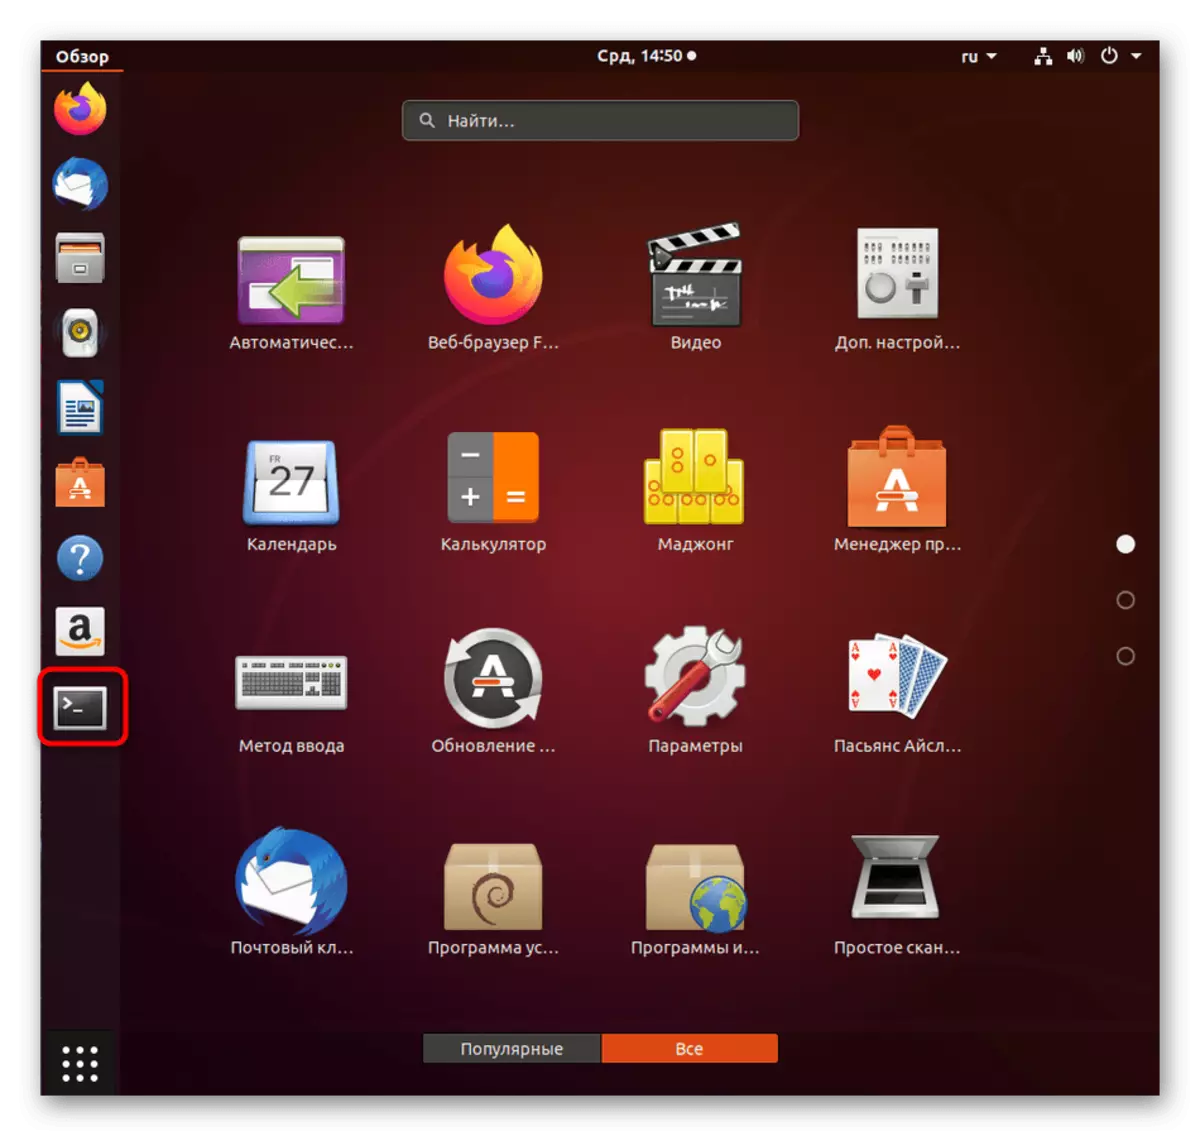 Allez au terminal après avoir téléchargé avec succès Ubuntu sur le noyau de travail